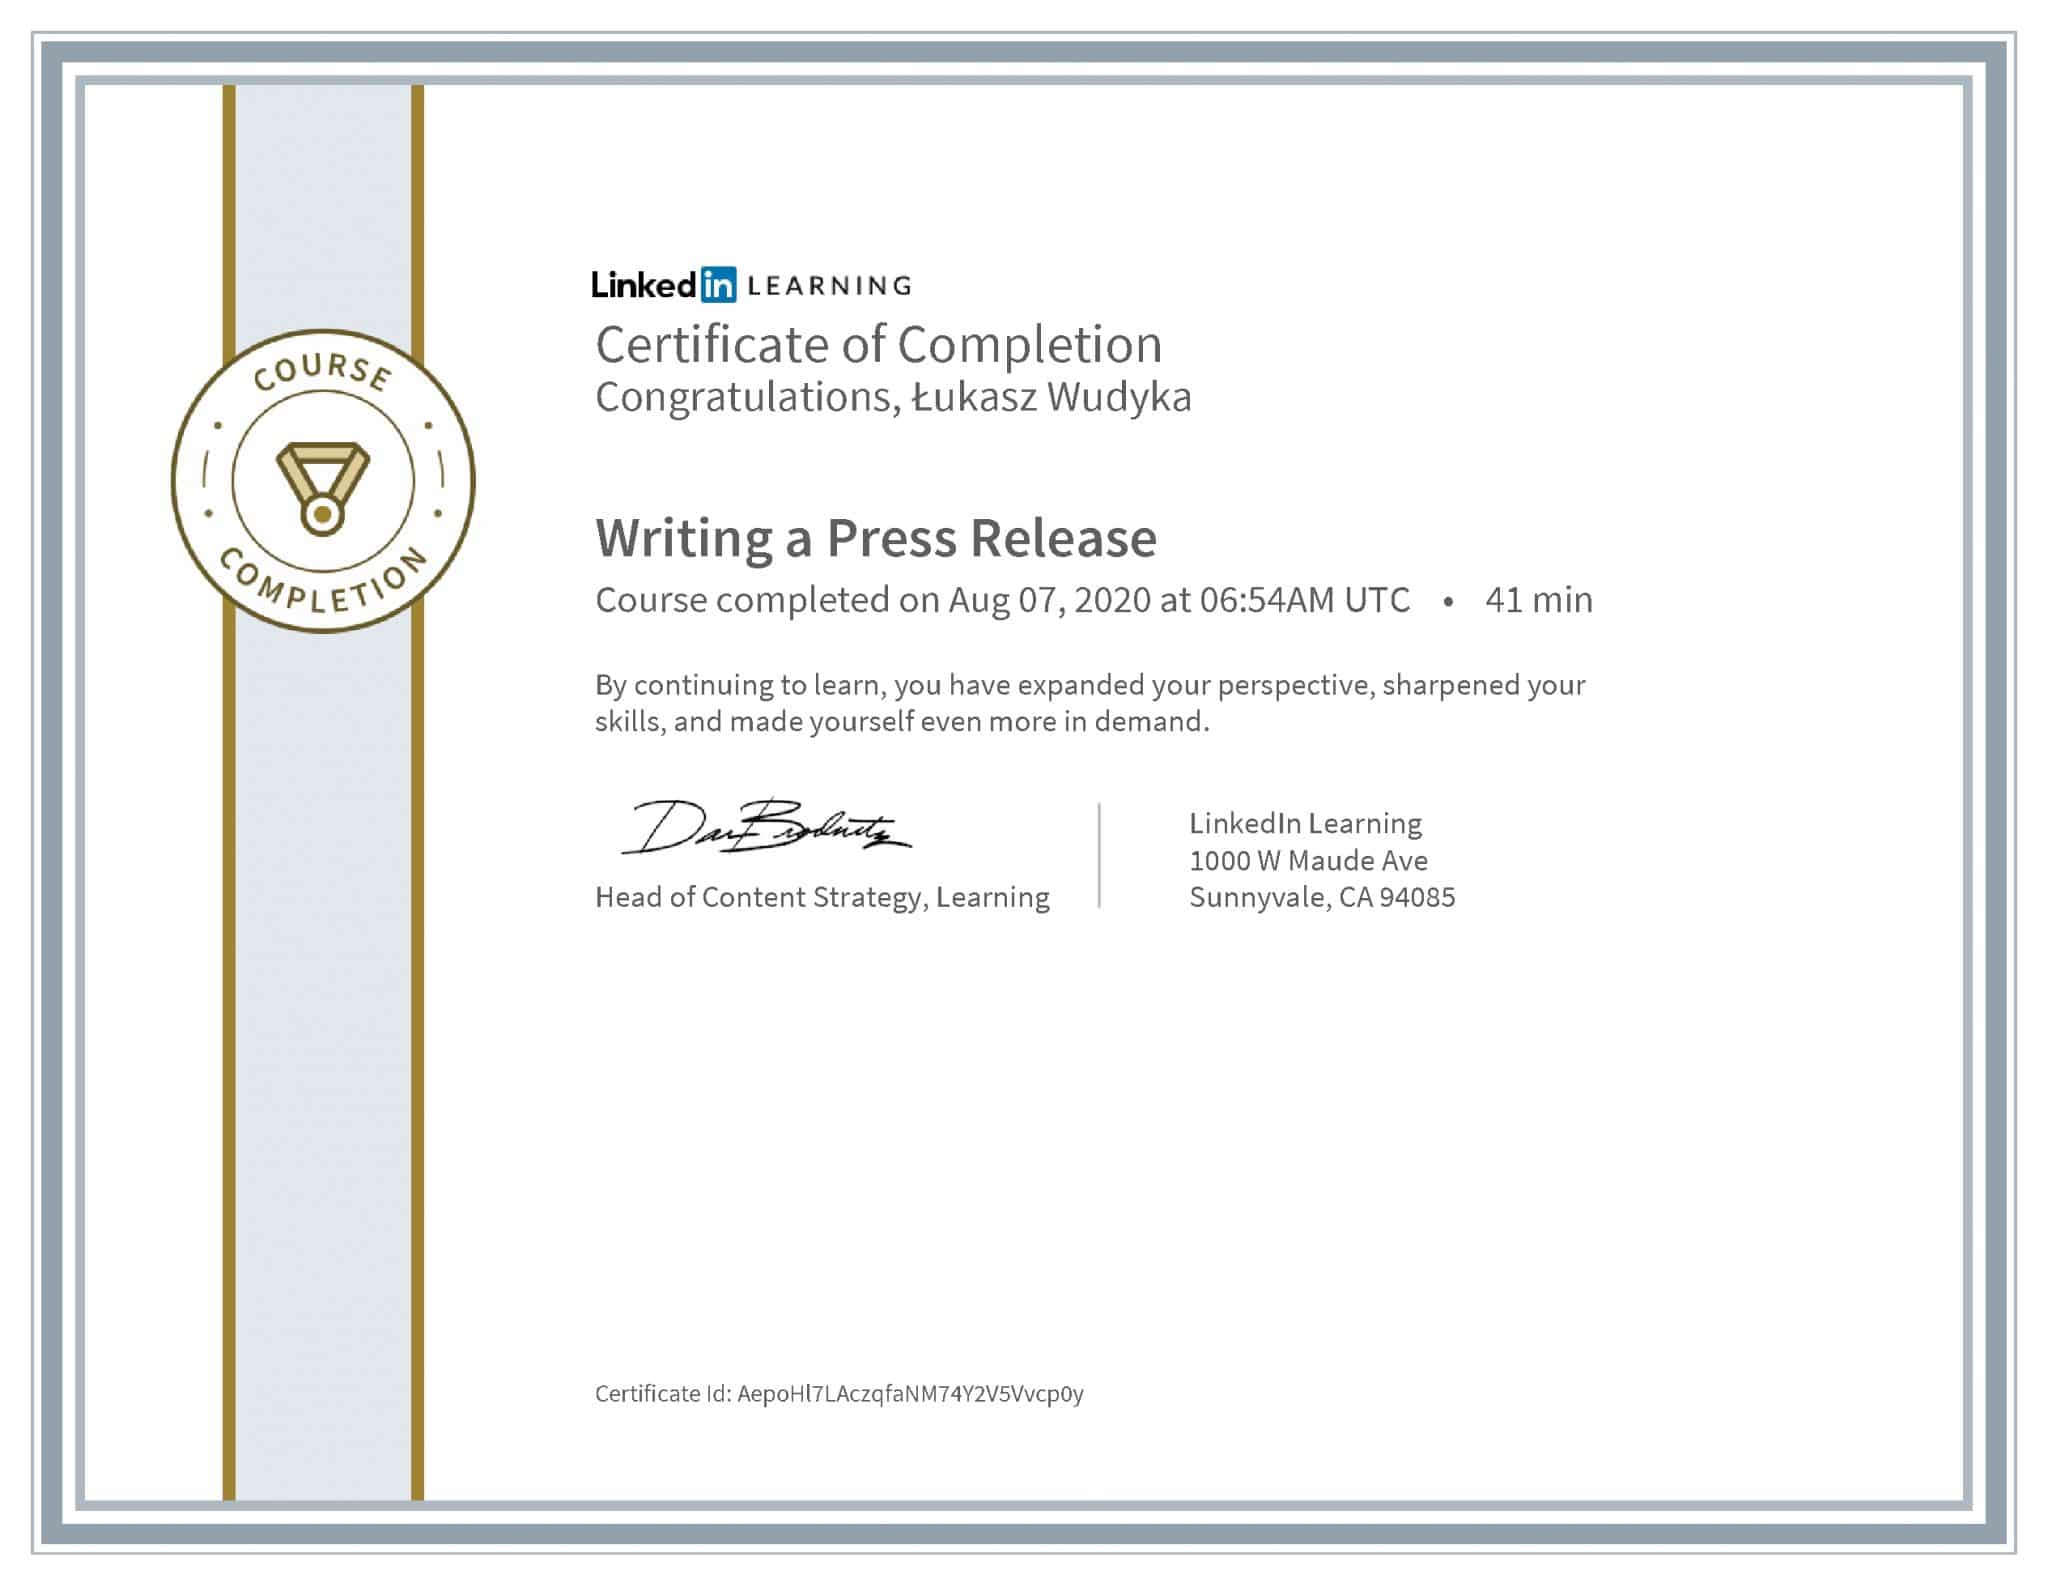 Łukasz Wudyka certyfikat LinkedIn Writing a Press Release